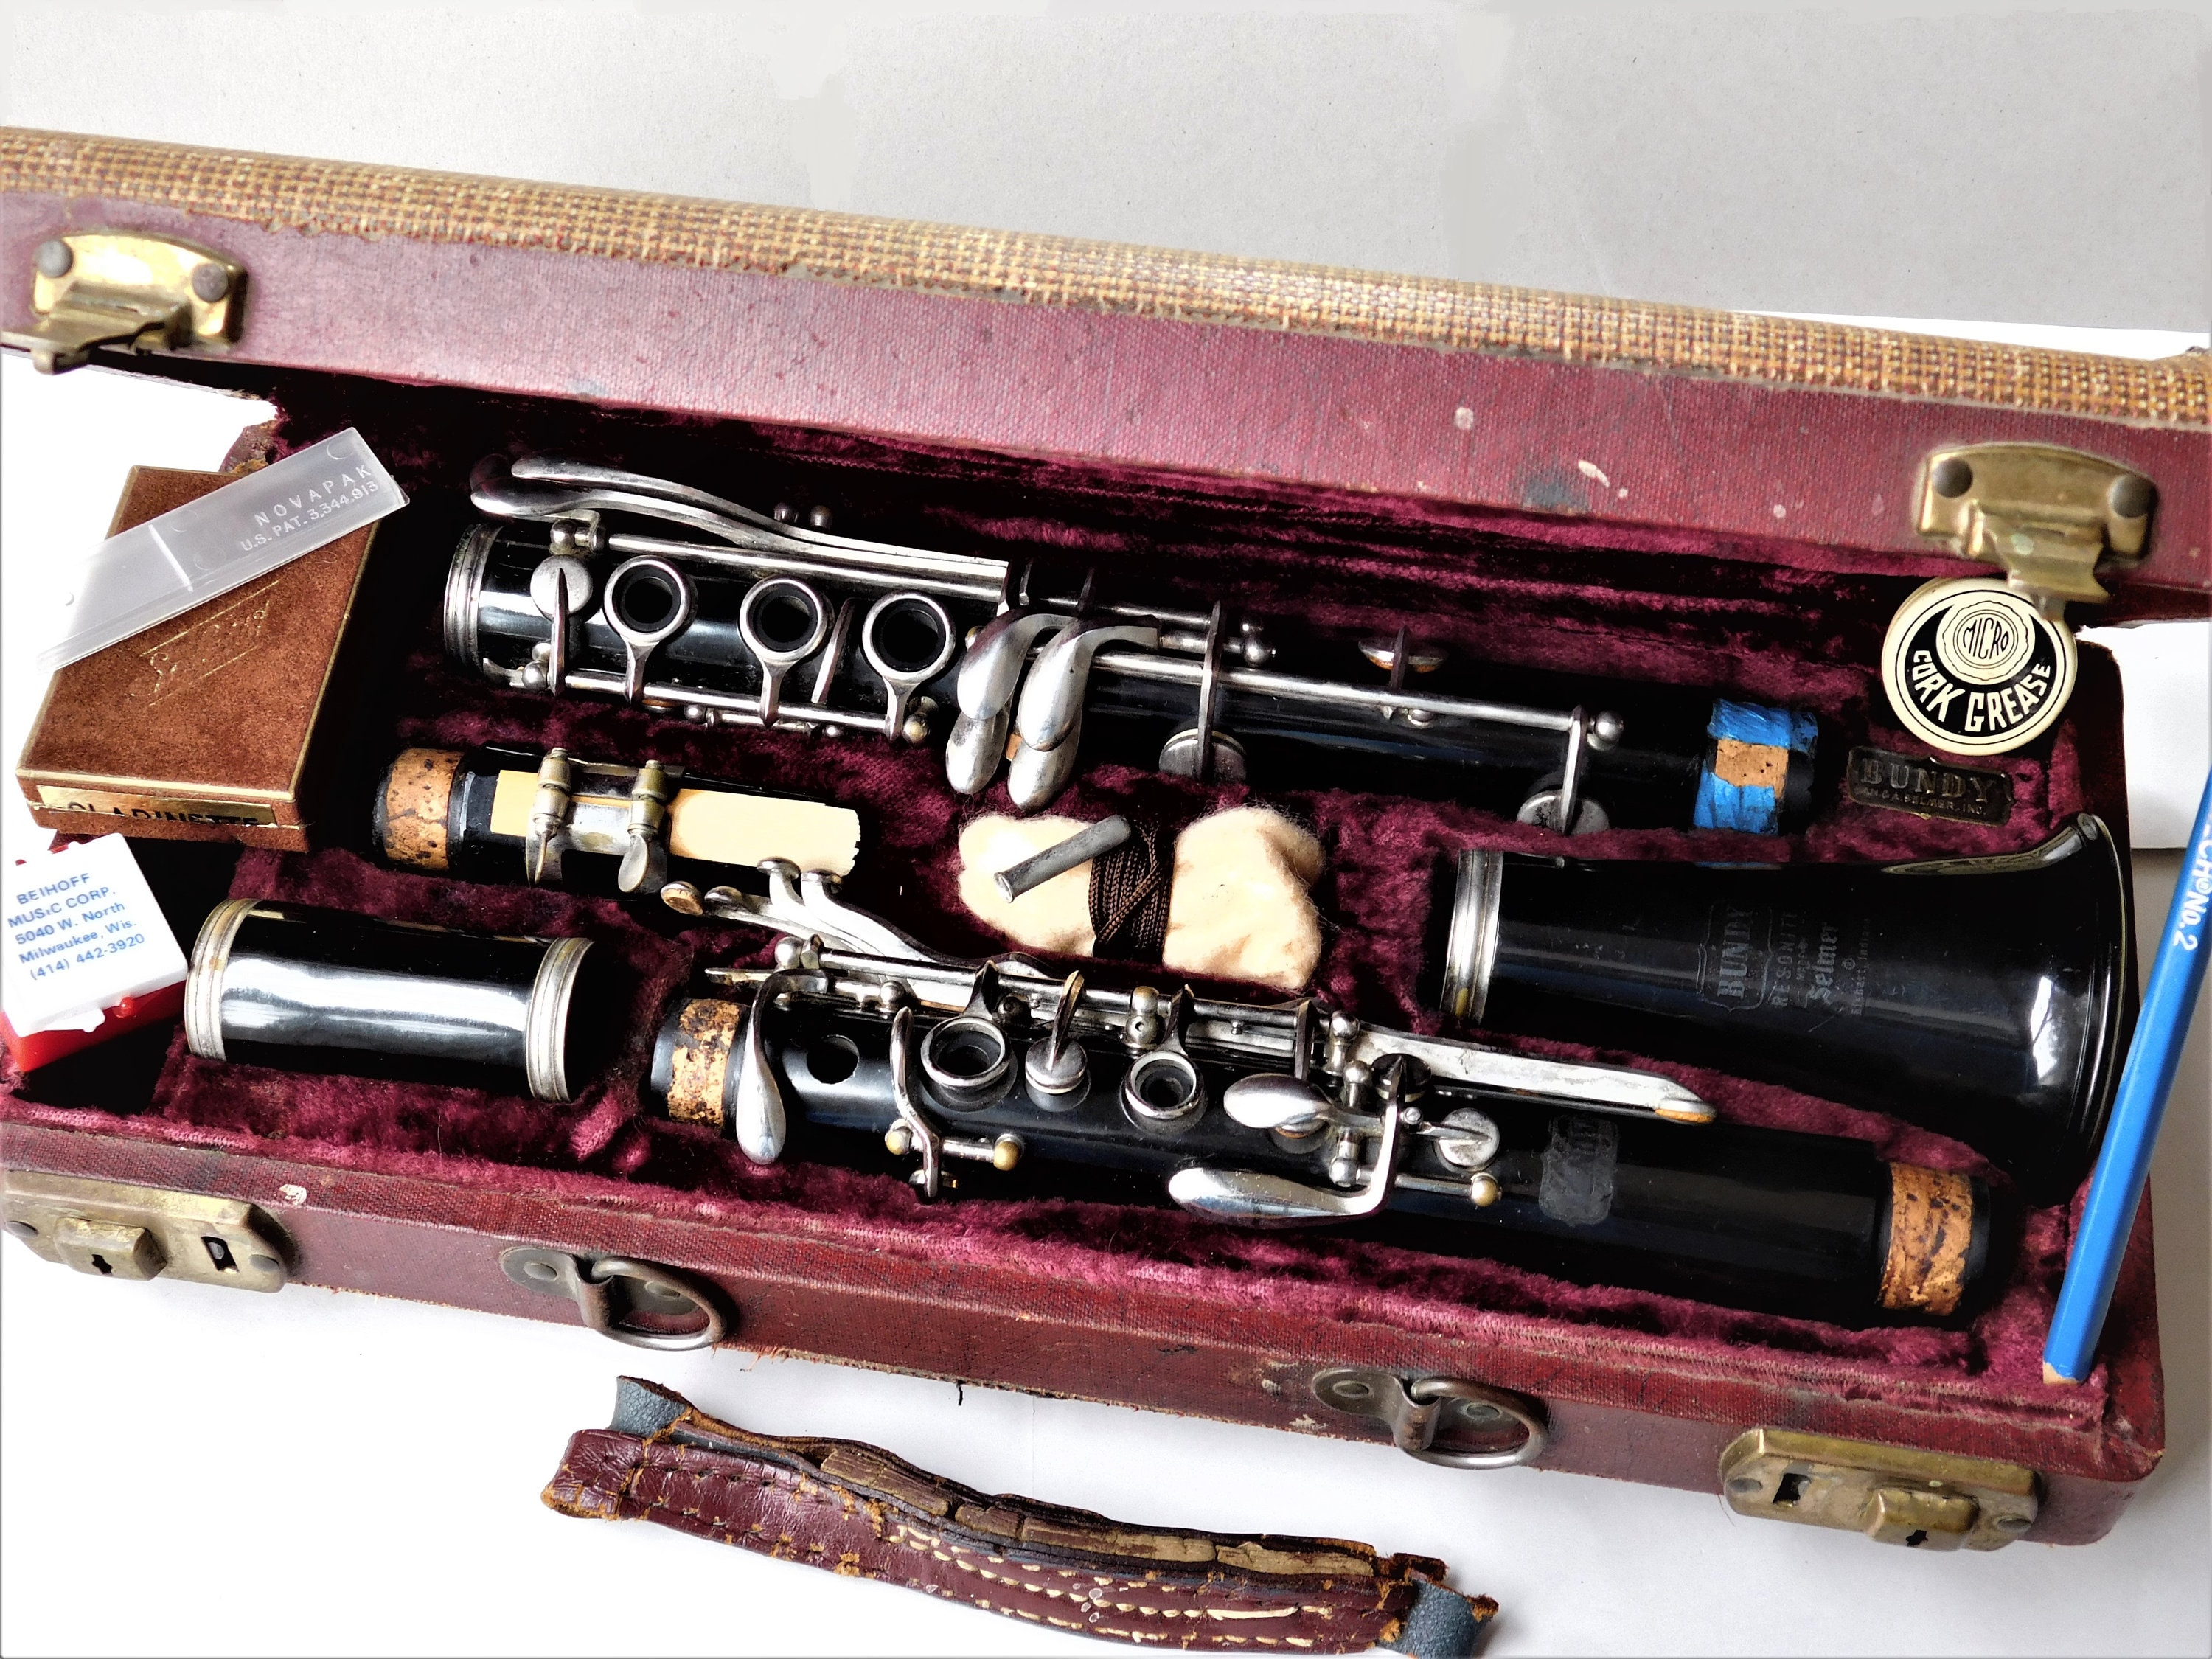 1960s bundy resonite clarinet